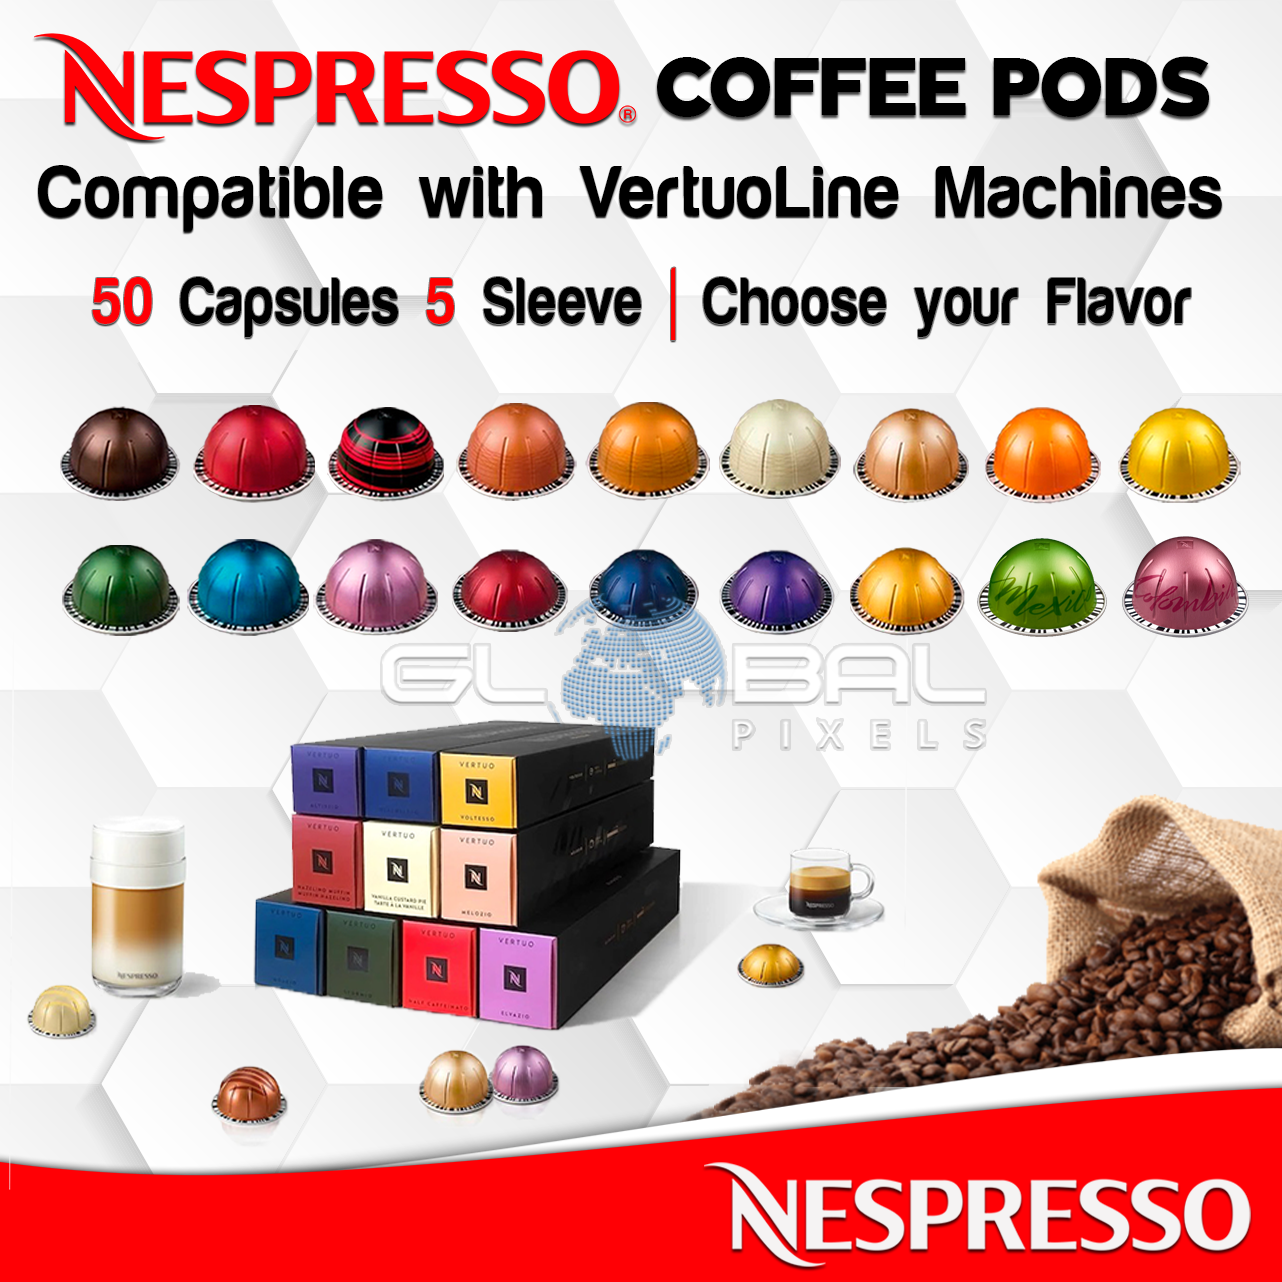 Cirkel åbning forbruger NESPRESSO Coffee 50 Pods VERTUOLINE All Flavors 5 Sleeves OR Variety Pack  lot ☕ | eBay